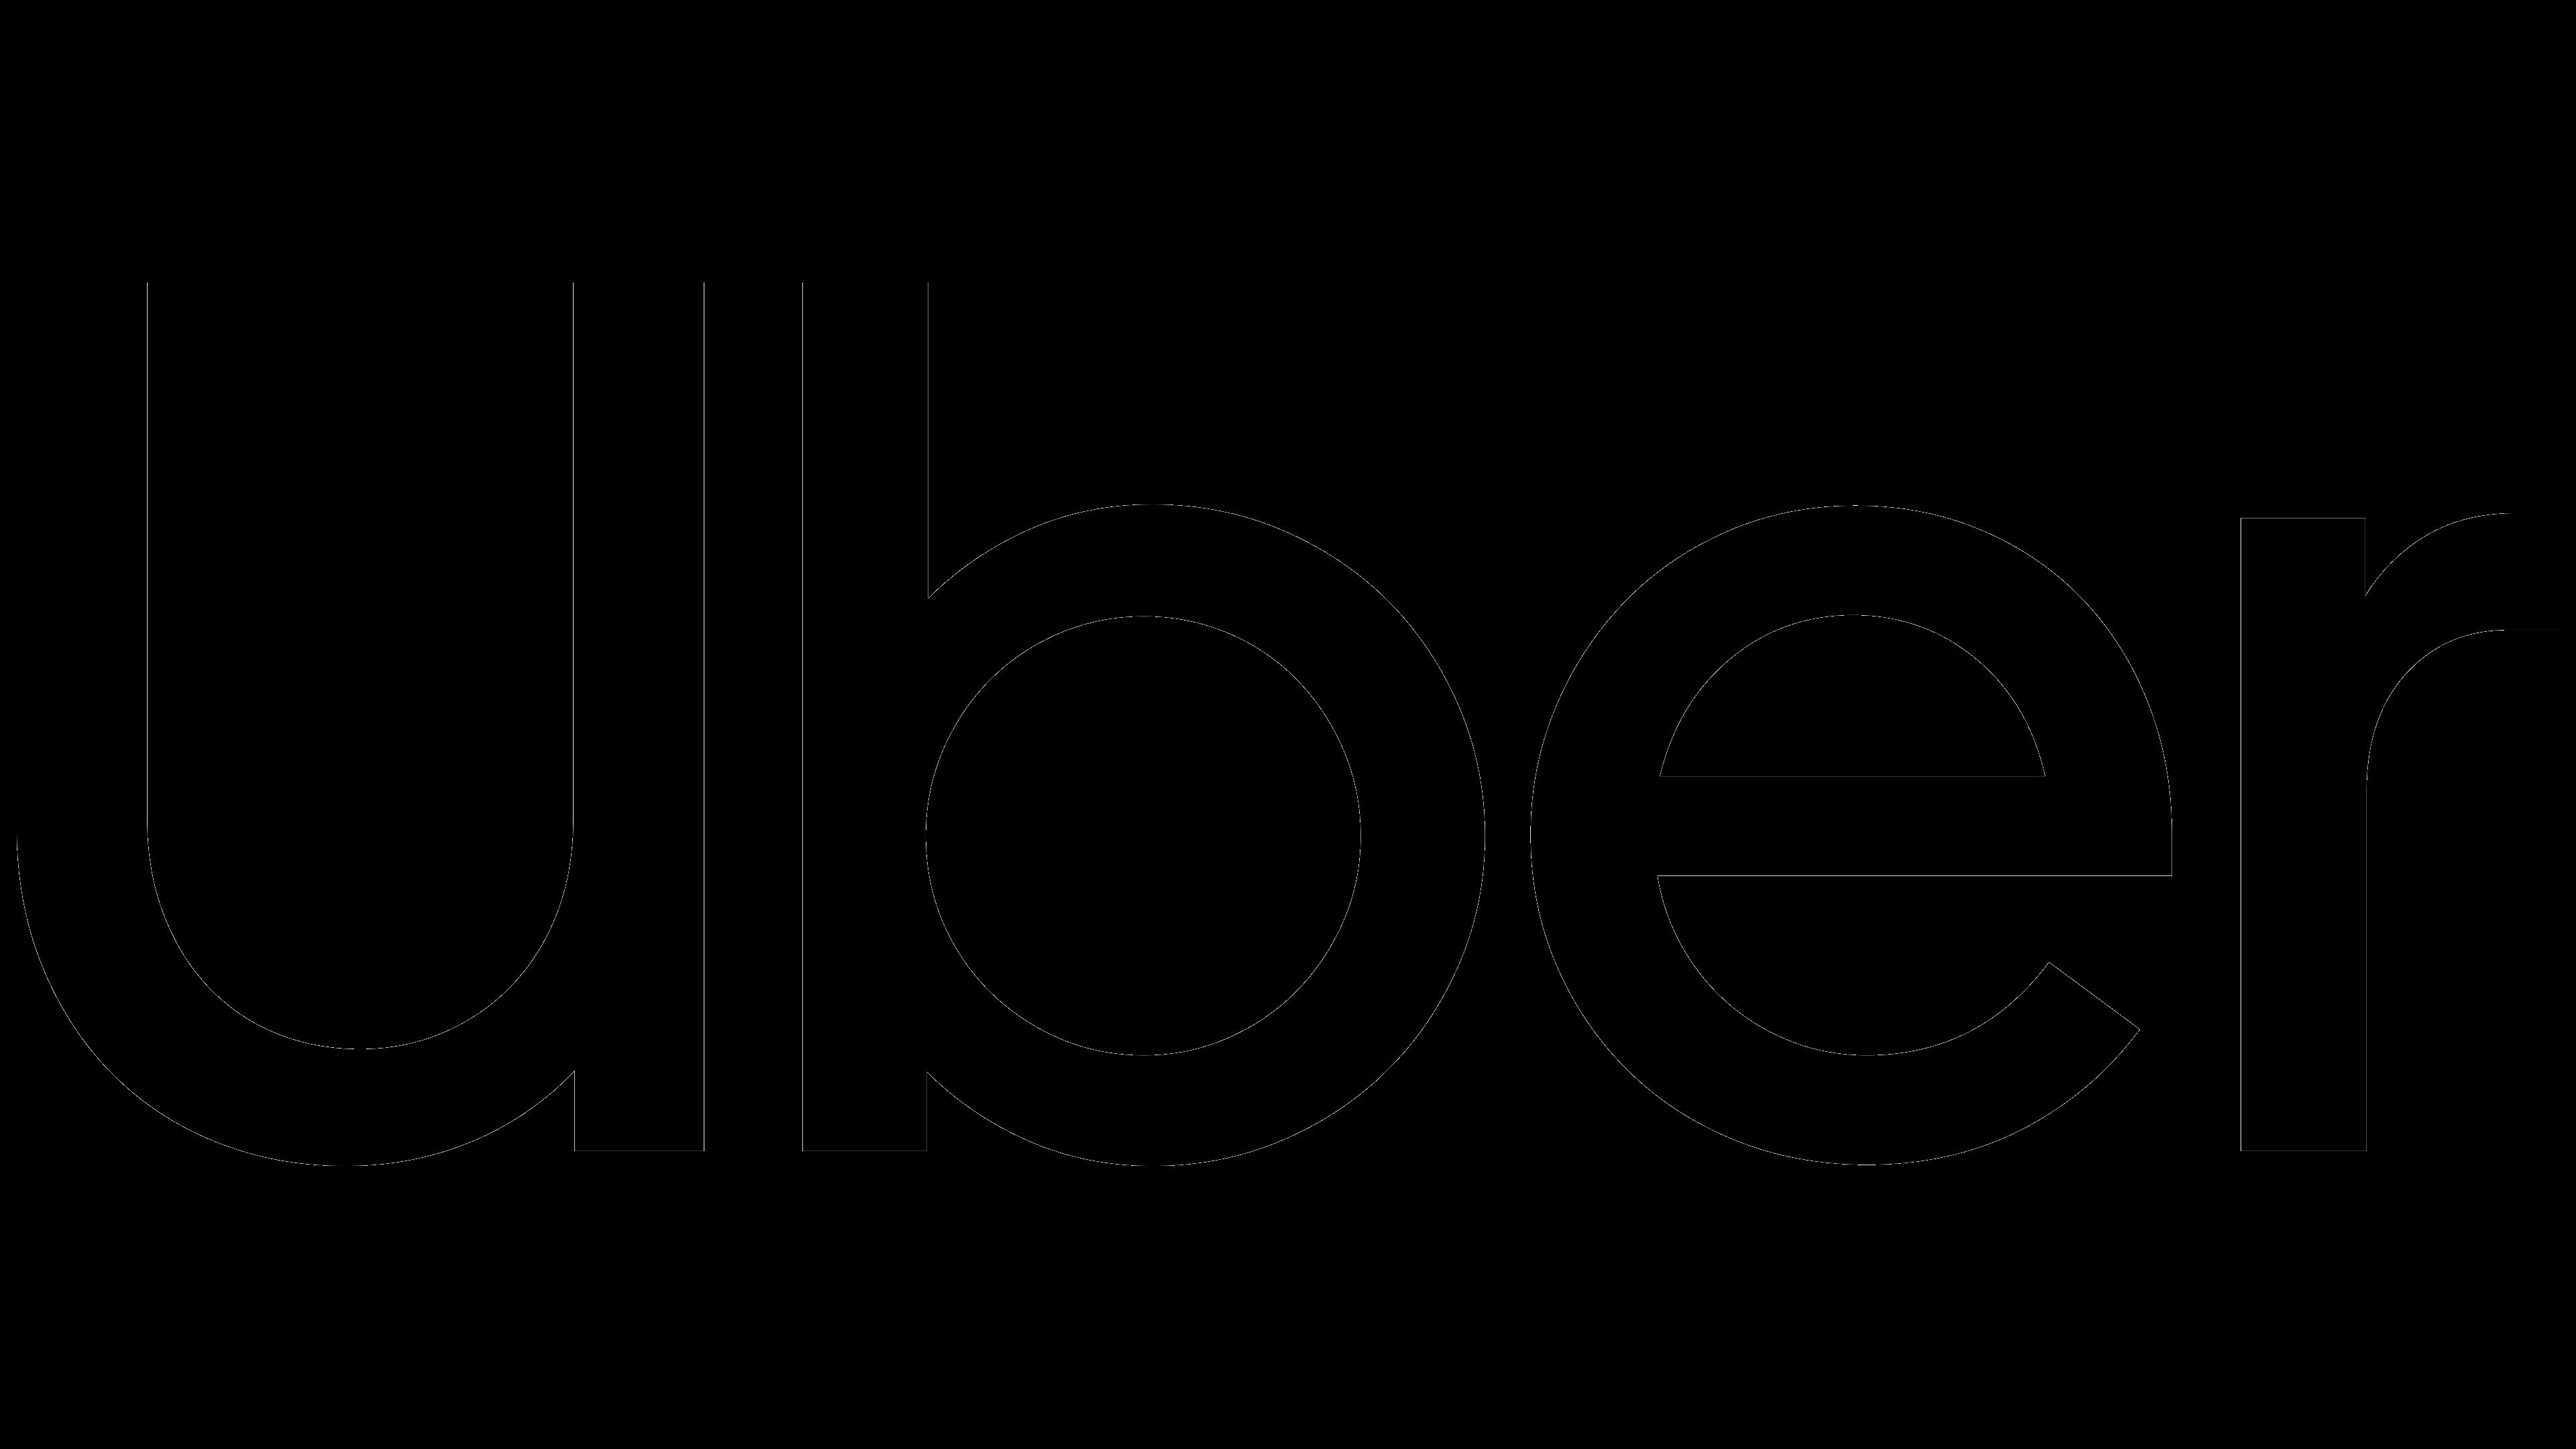 Uber_logo